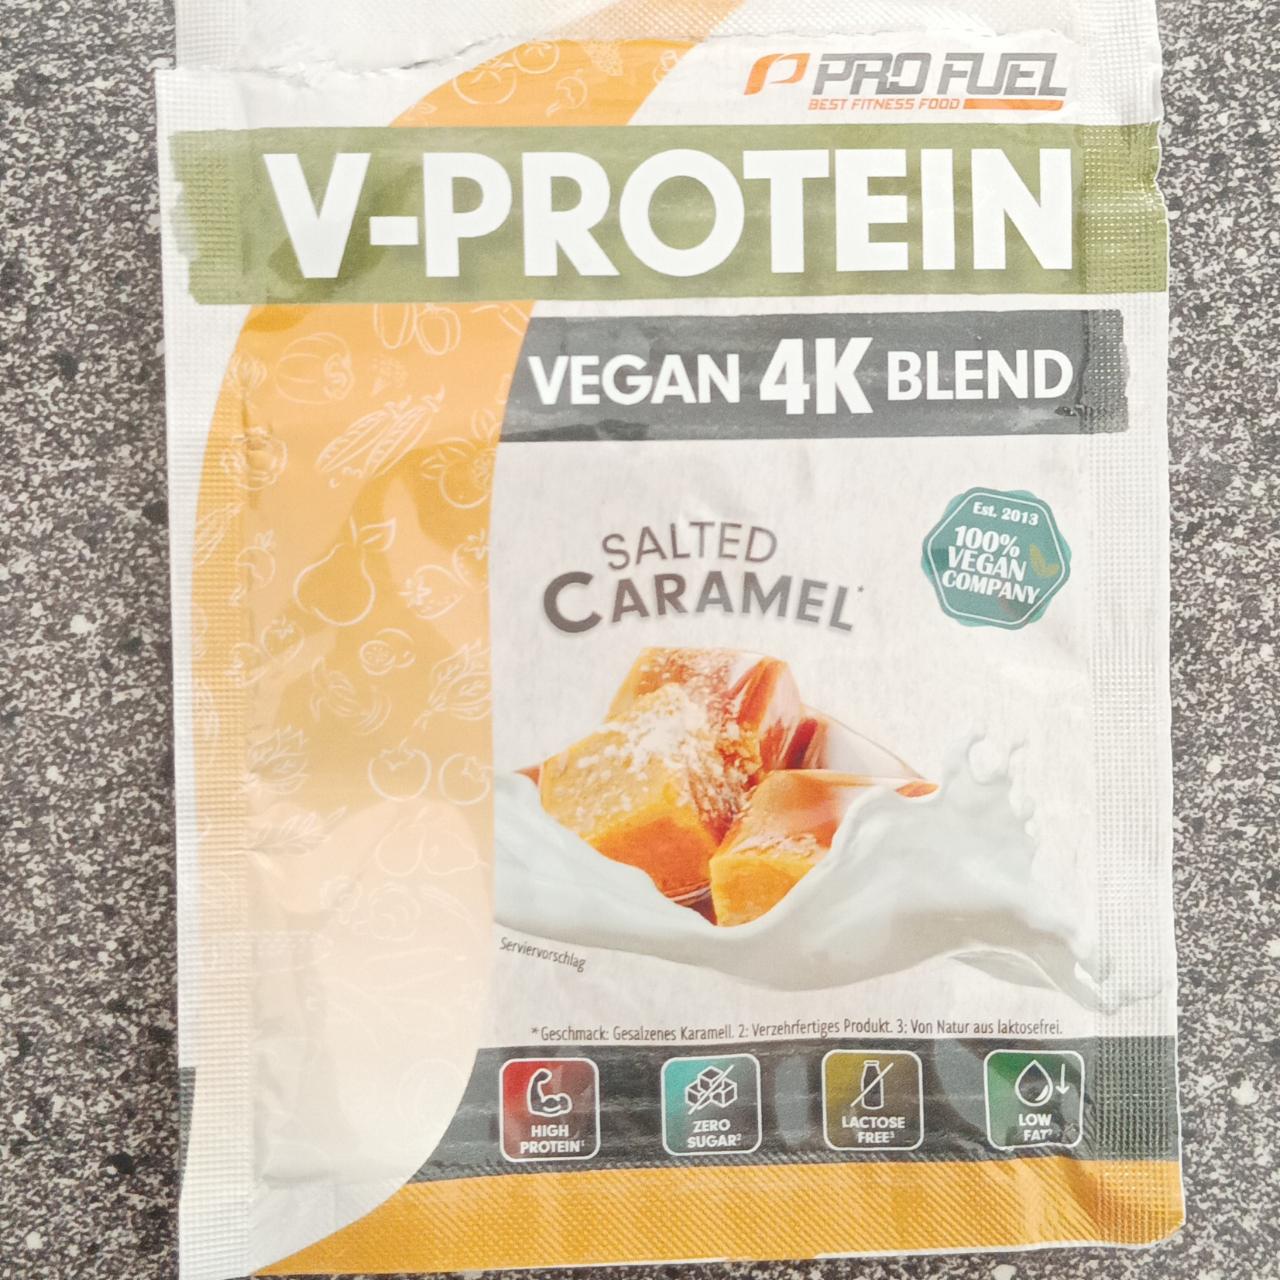 Fotografie - Vegan 4K blend Salted caramel V-Protein Pro Fuel